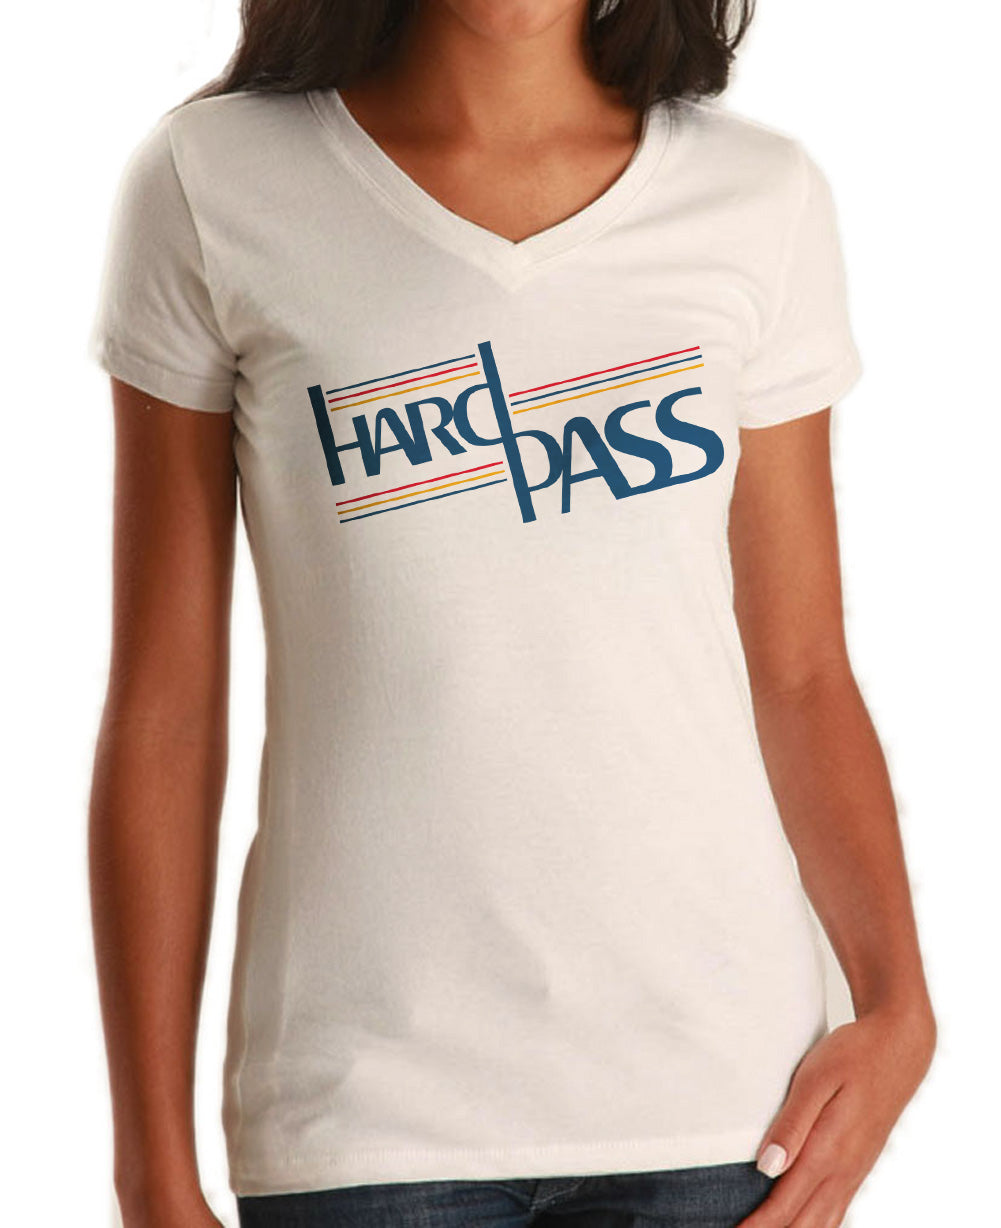 Women's Hard Pass Vneck T-Shirt